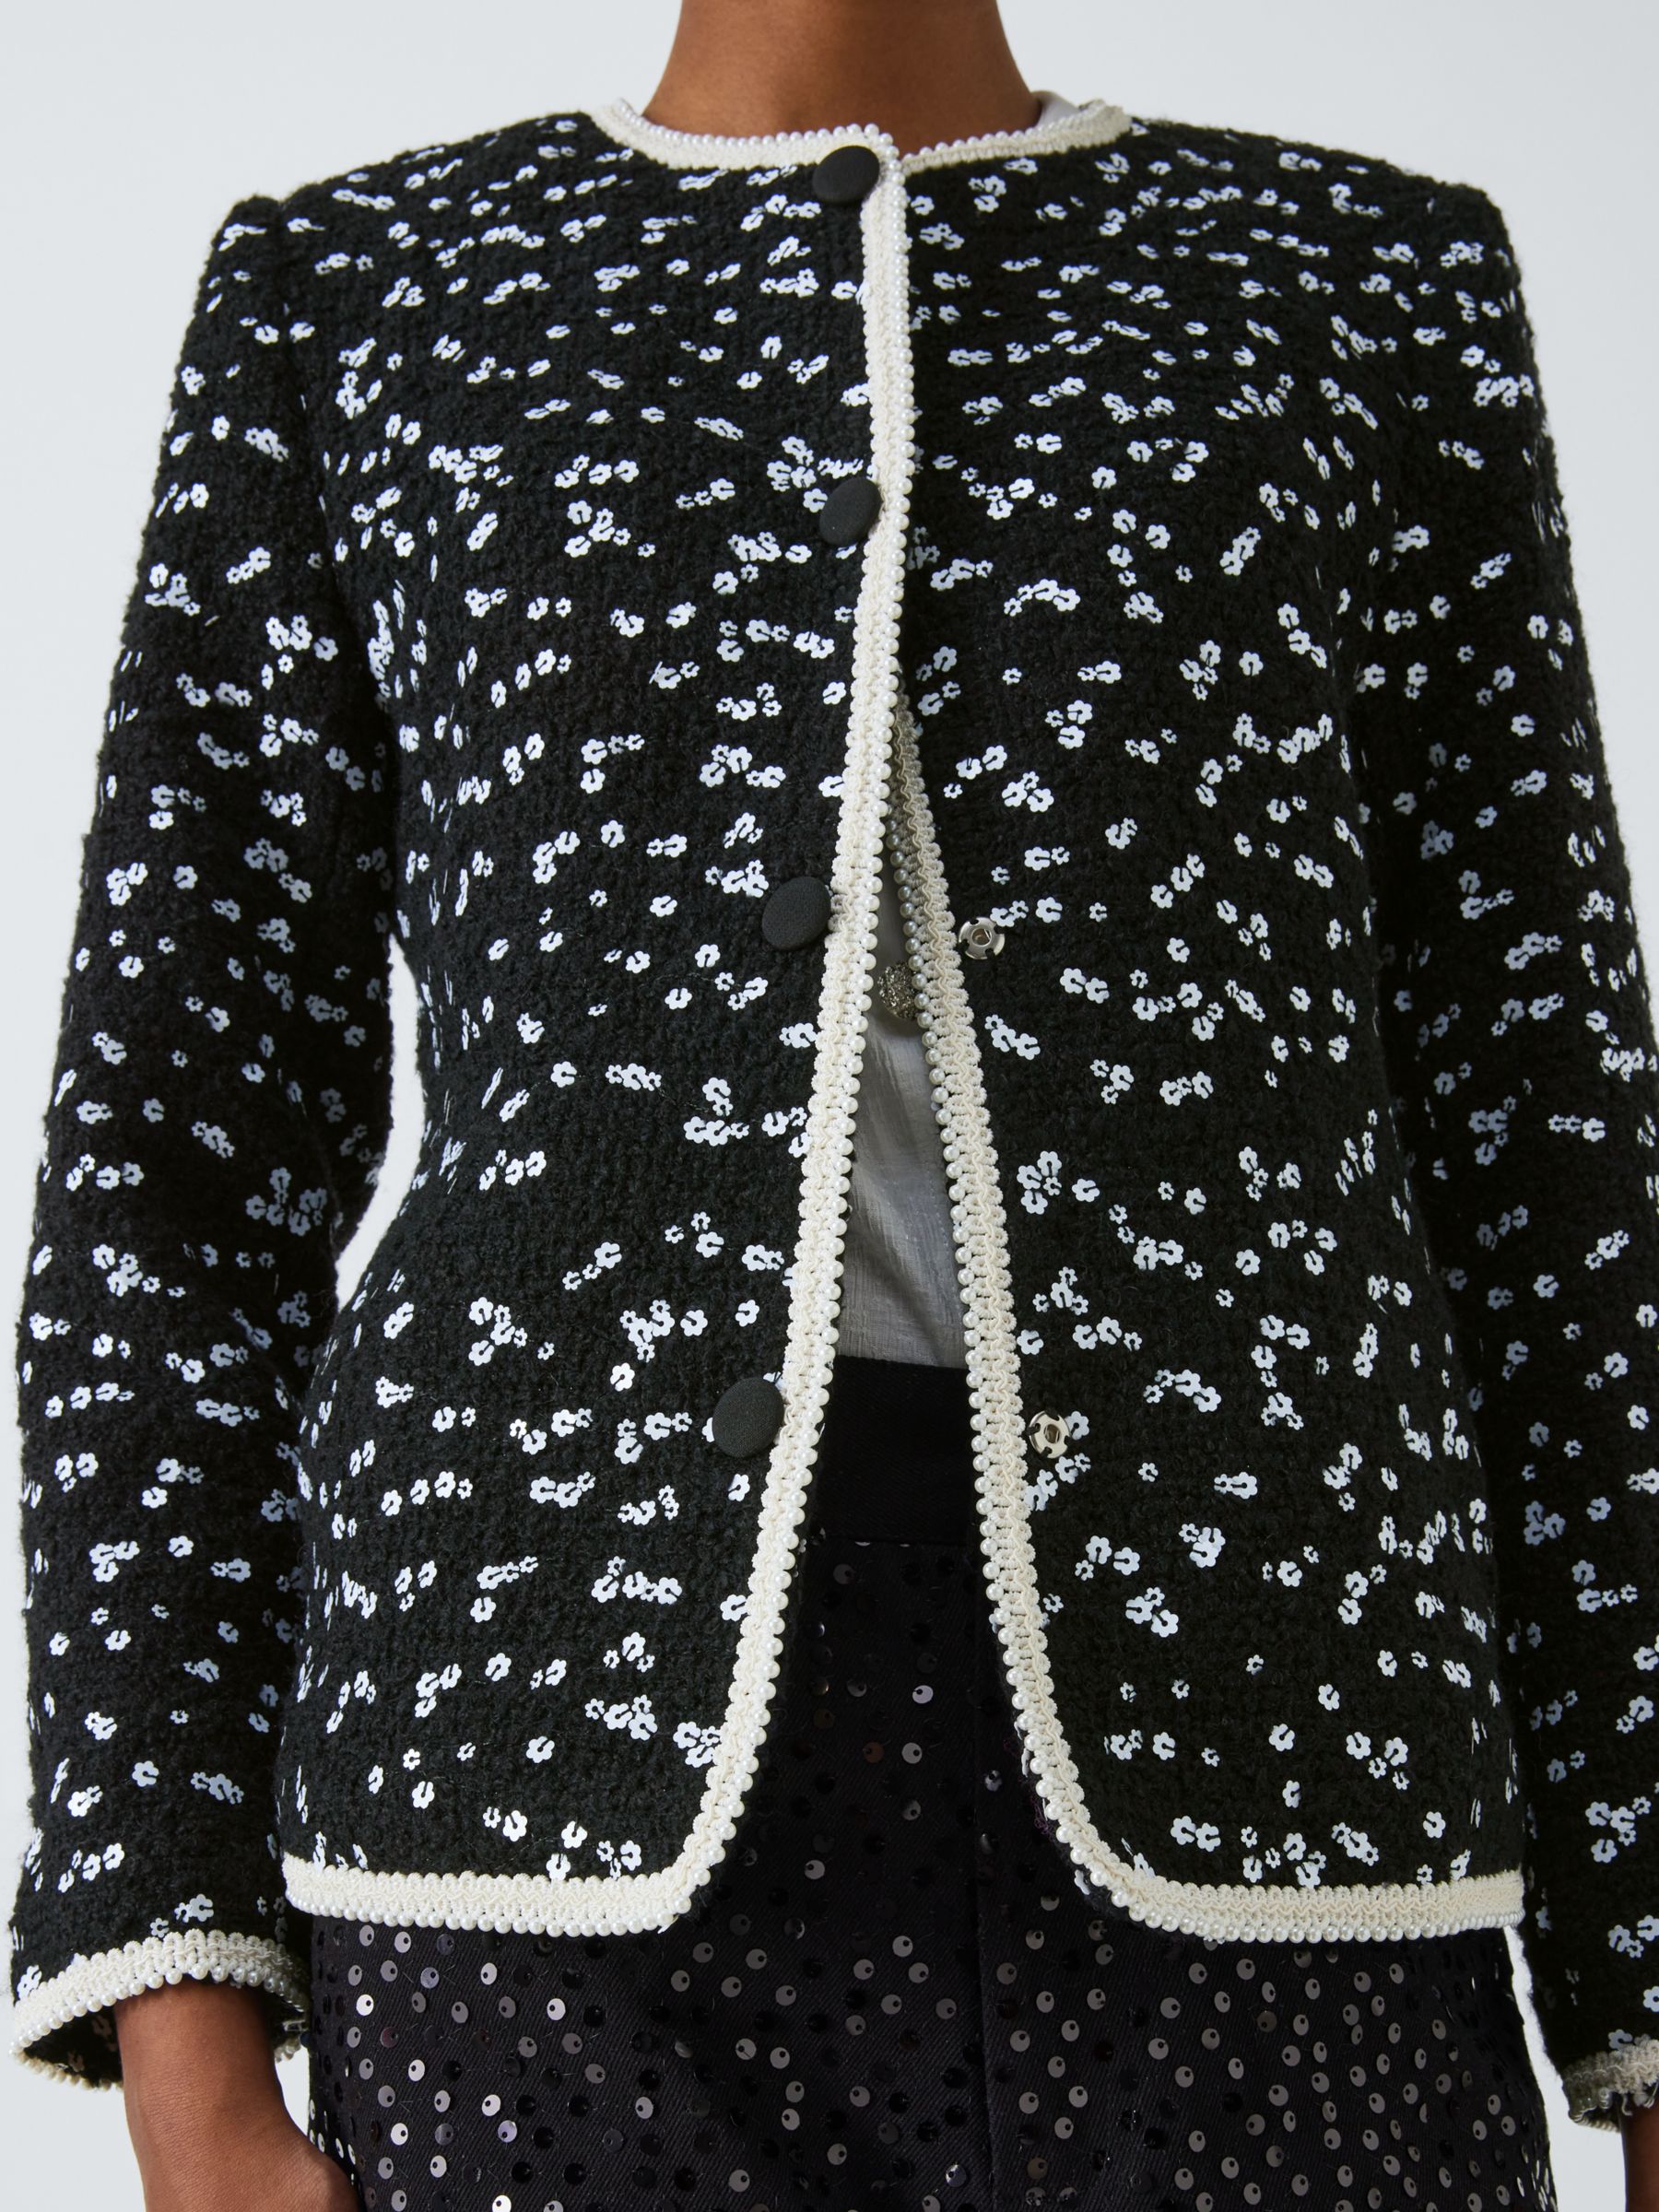 Sister Jane Renoir Embellished Tweed Jacket, Black/Multi, 8